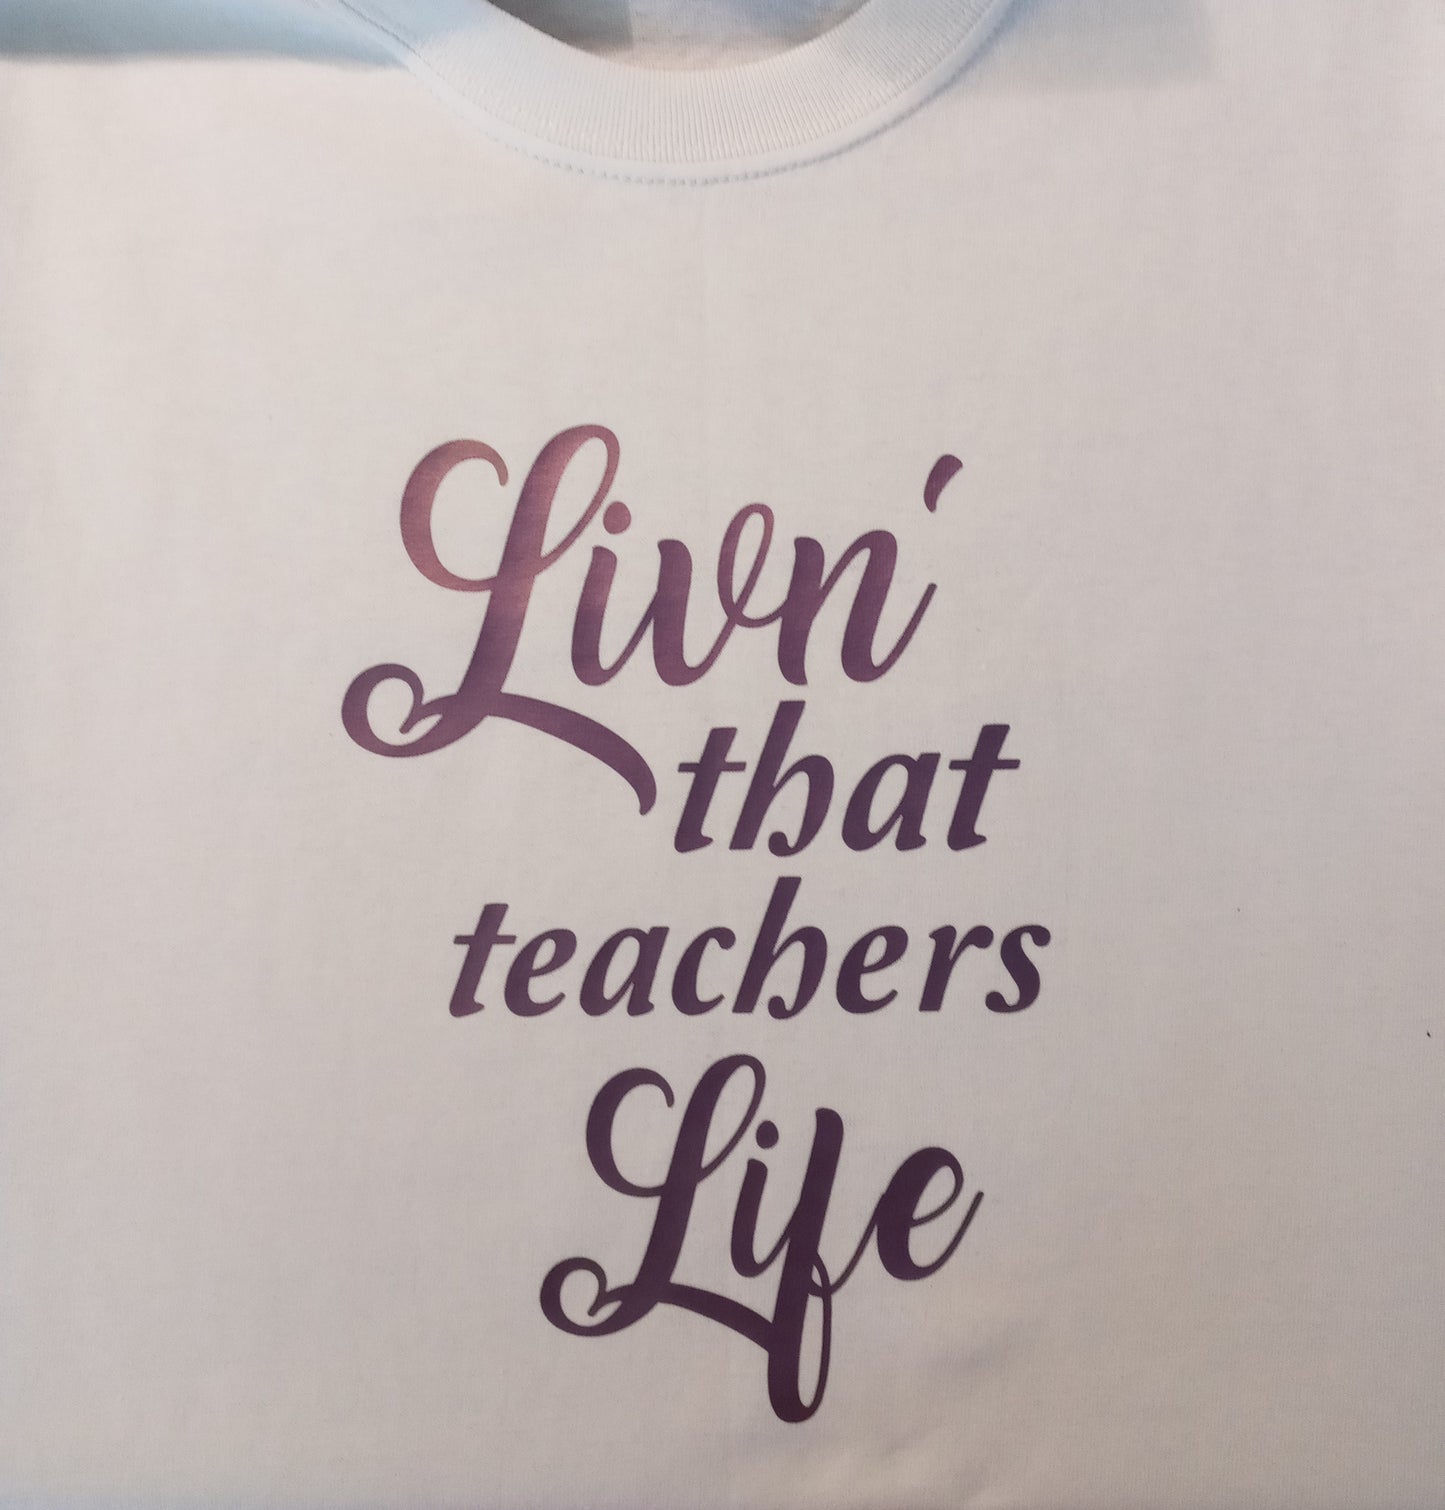 Livn' that teachers life